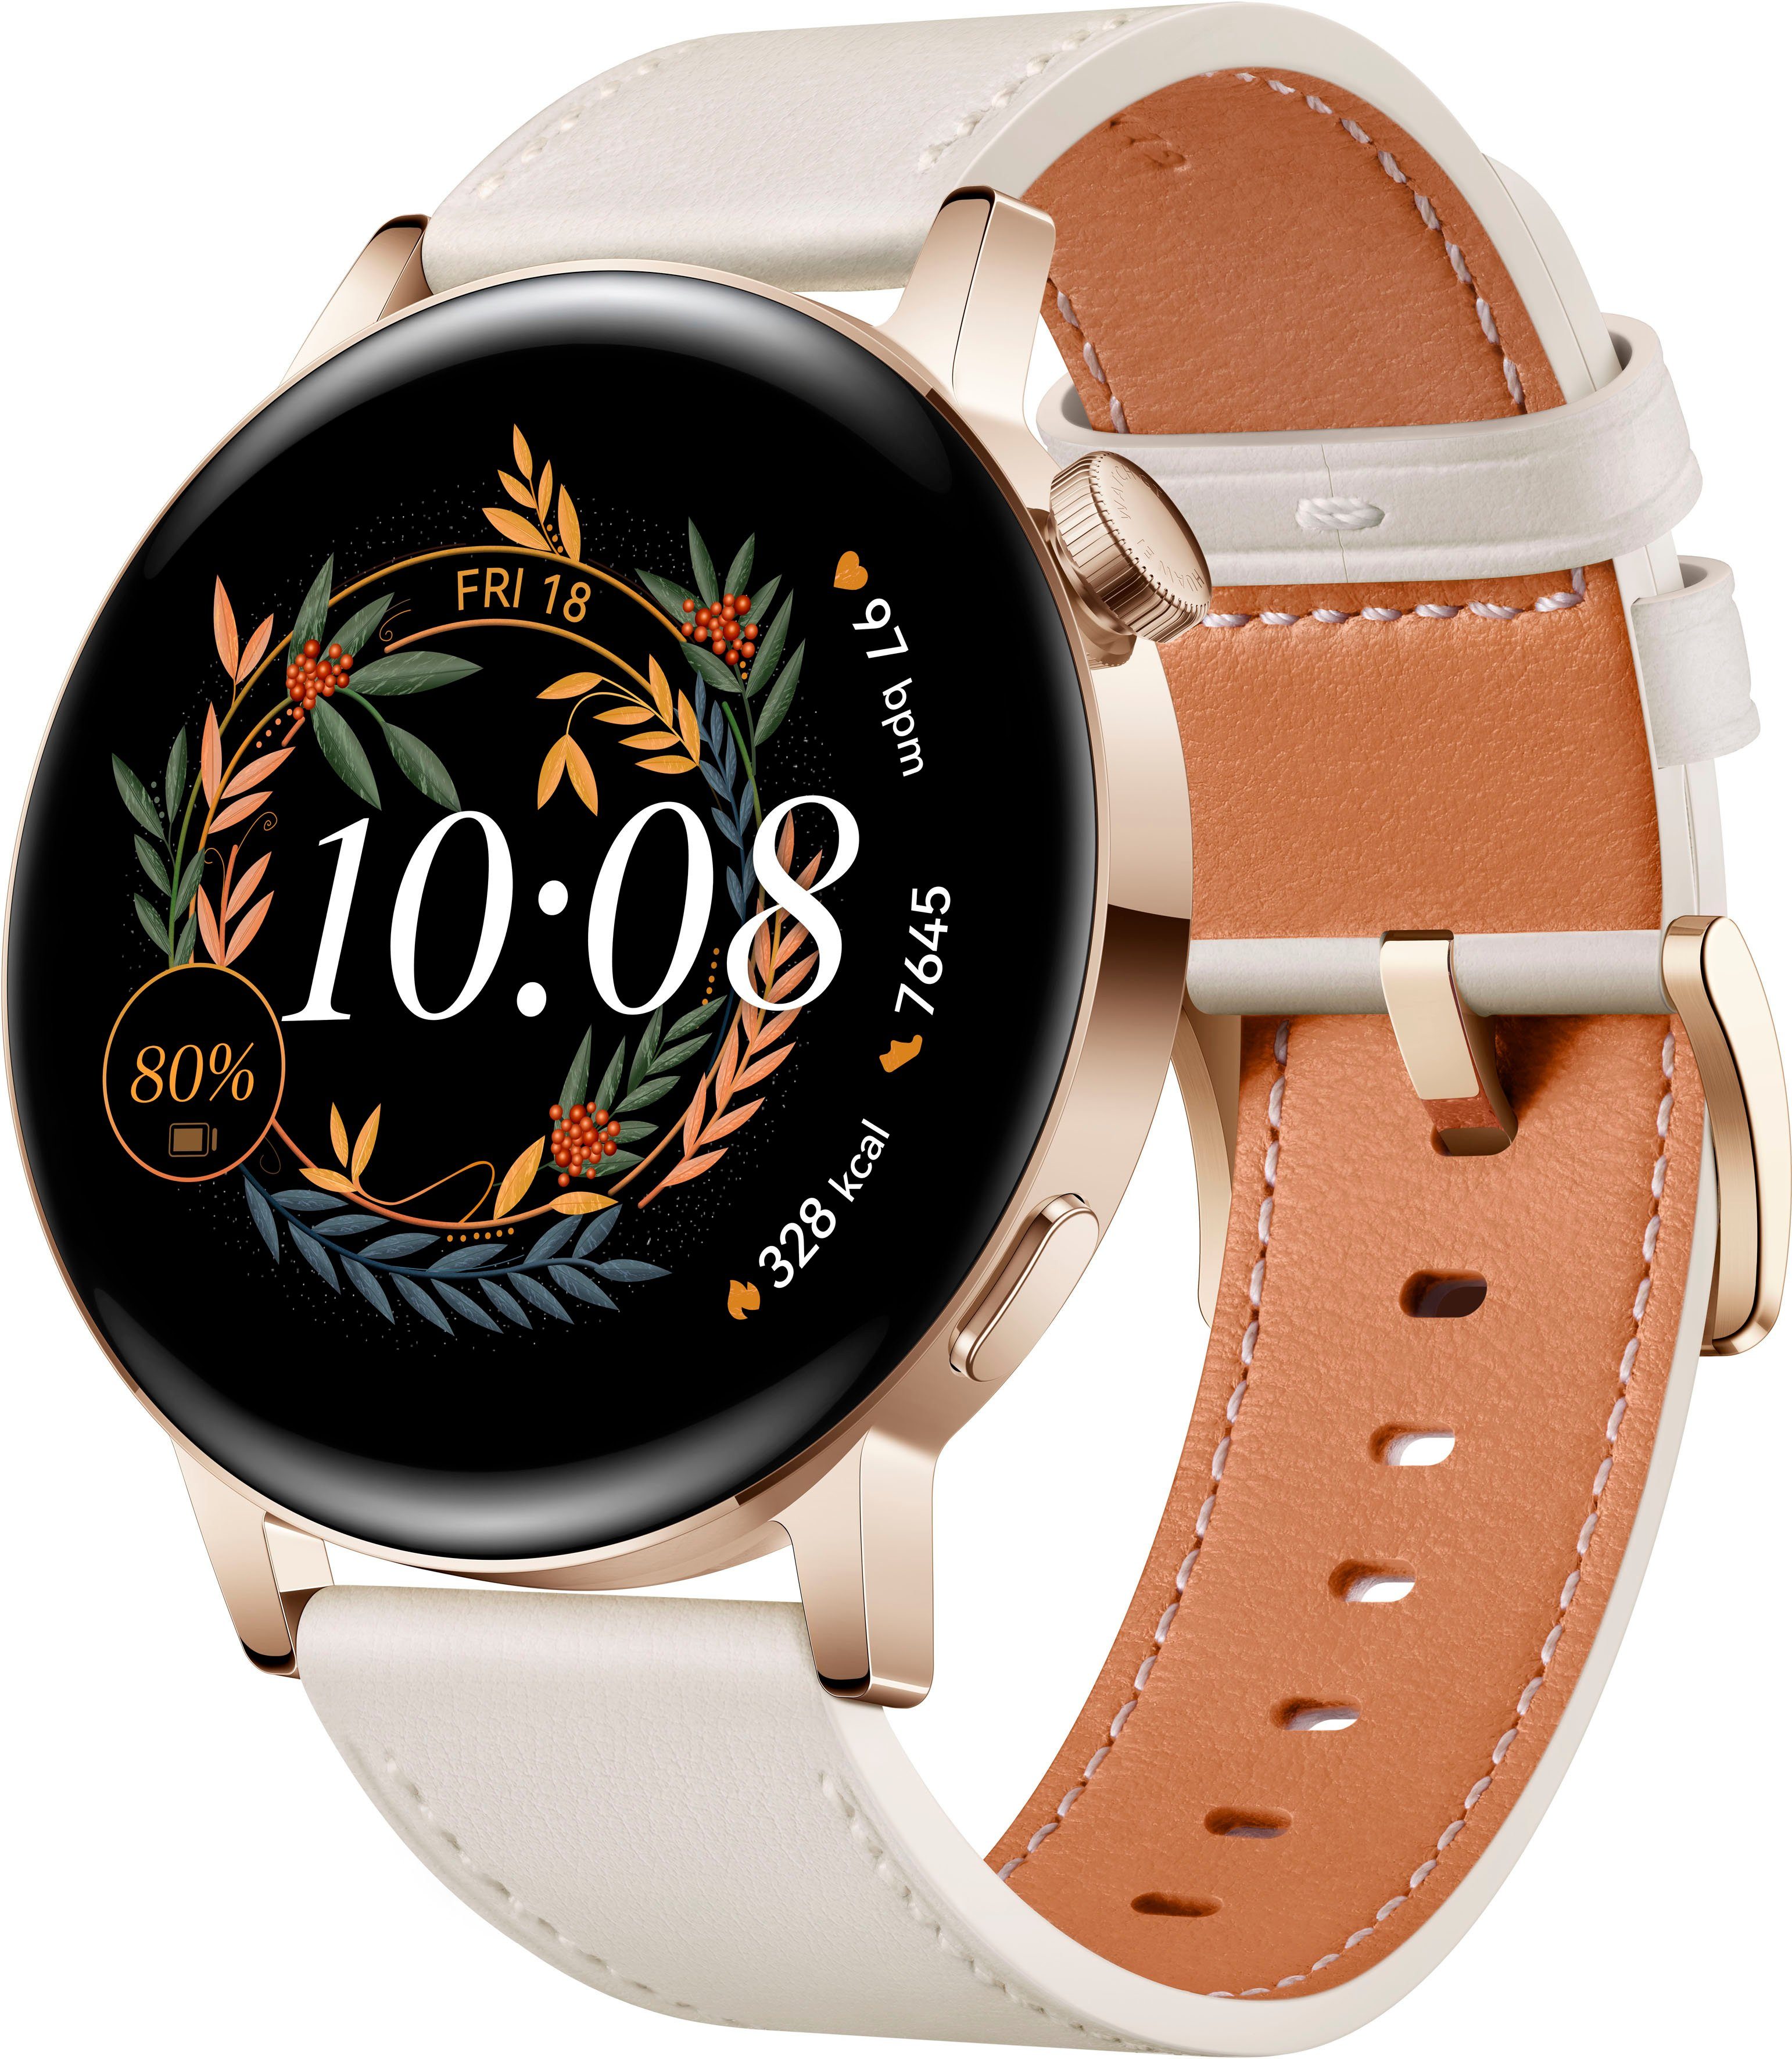 Huawei WATCH GT3 Smartwatch (3,35 cm/1,32 Zoll), 3 Jahre  Herstellergarantie, Standby-Akkulaufzeit bis zu 7 Tage, Wassergeschützt